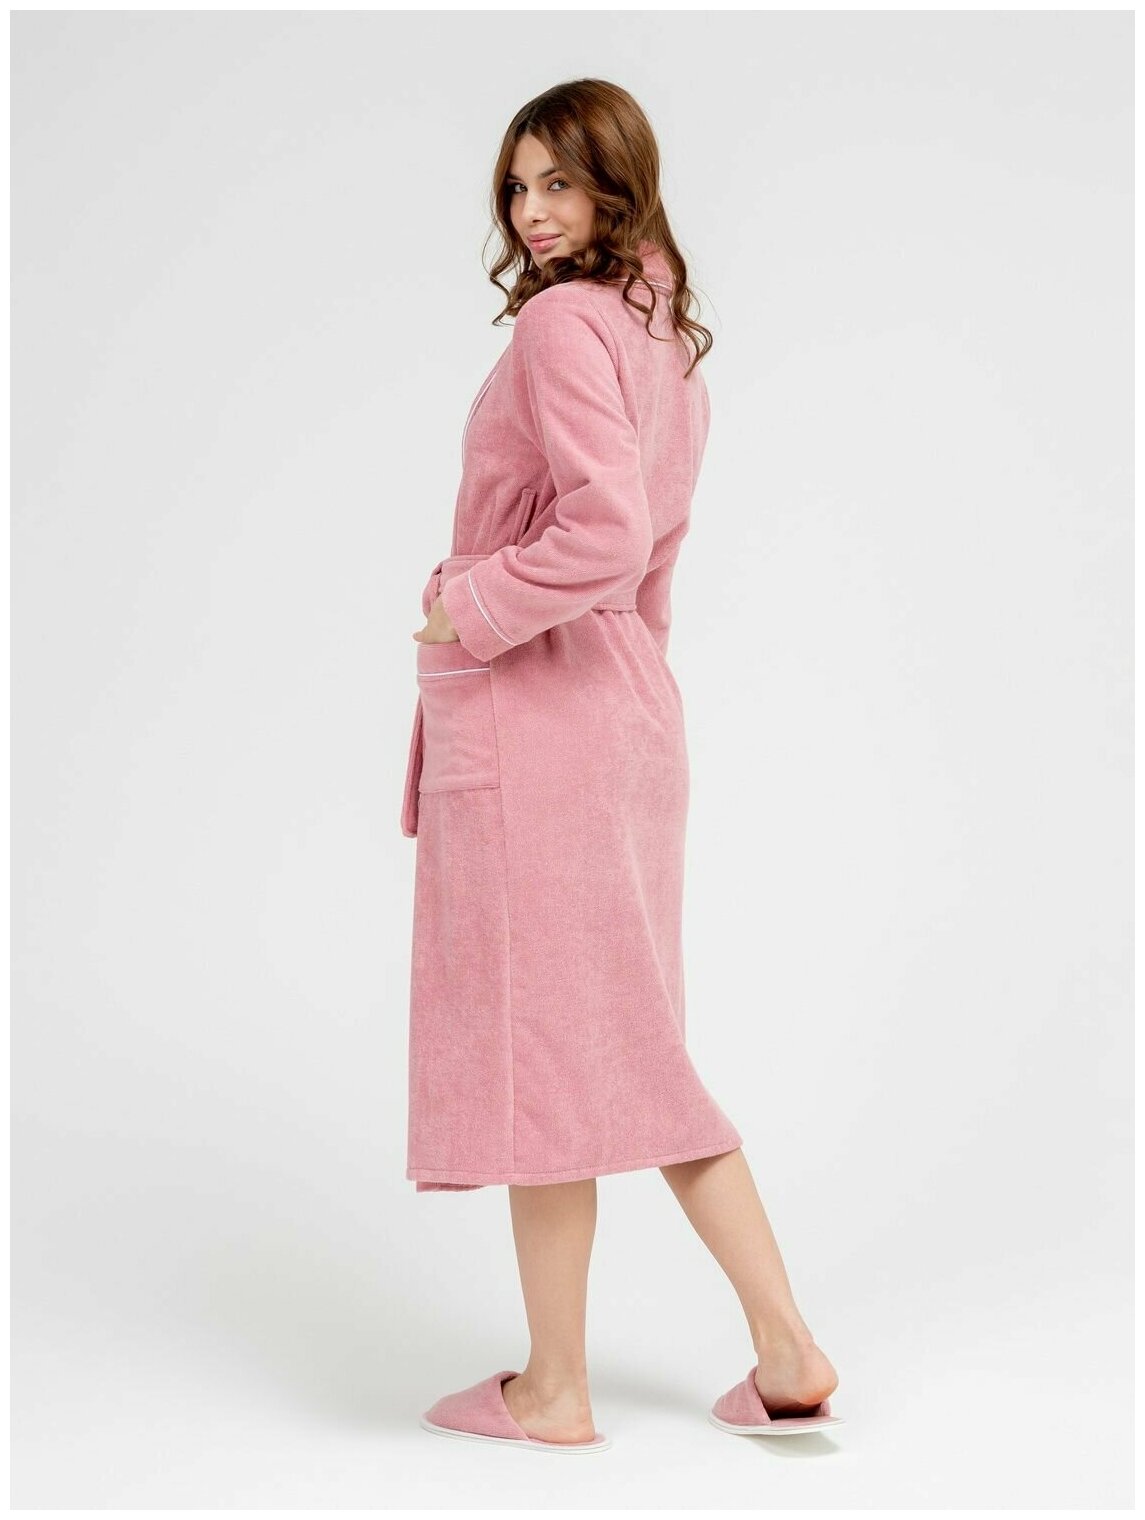 Женский махровый халат с кантом Росхалат, пудрово-розовый. Размер 46-48 - фотография № 9